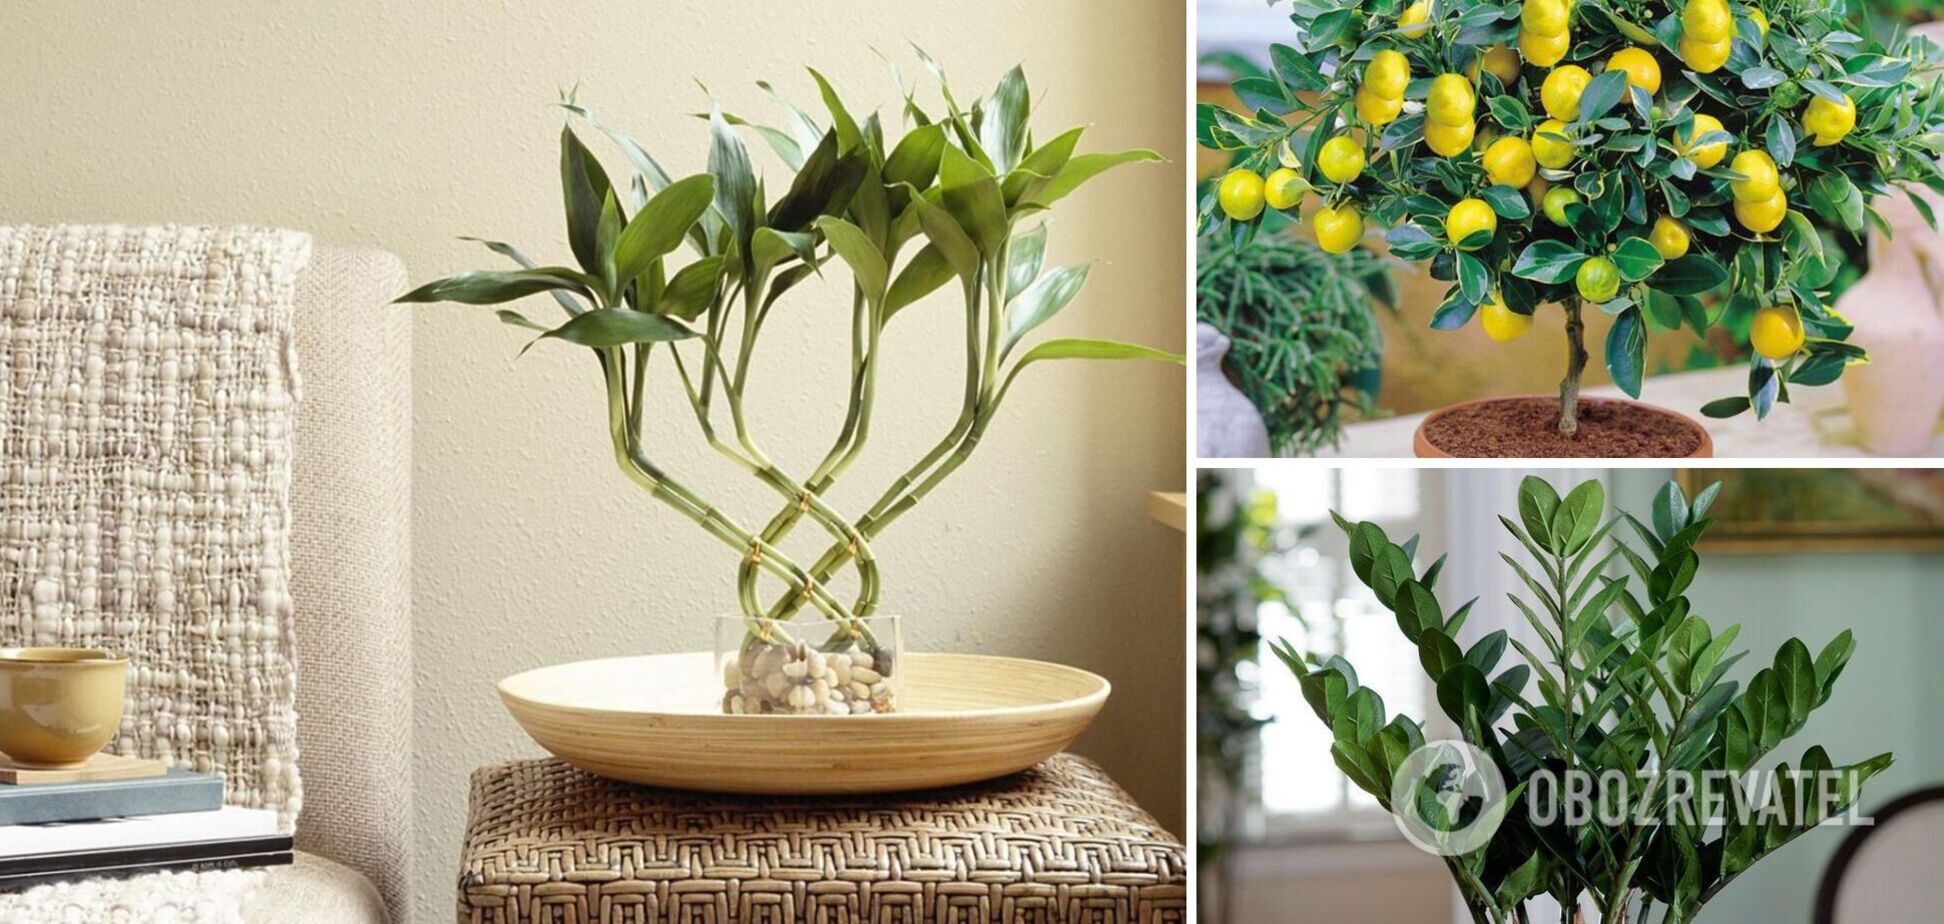 5 кімнатних рослин, які притягують до будинку гроші та удачу